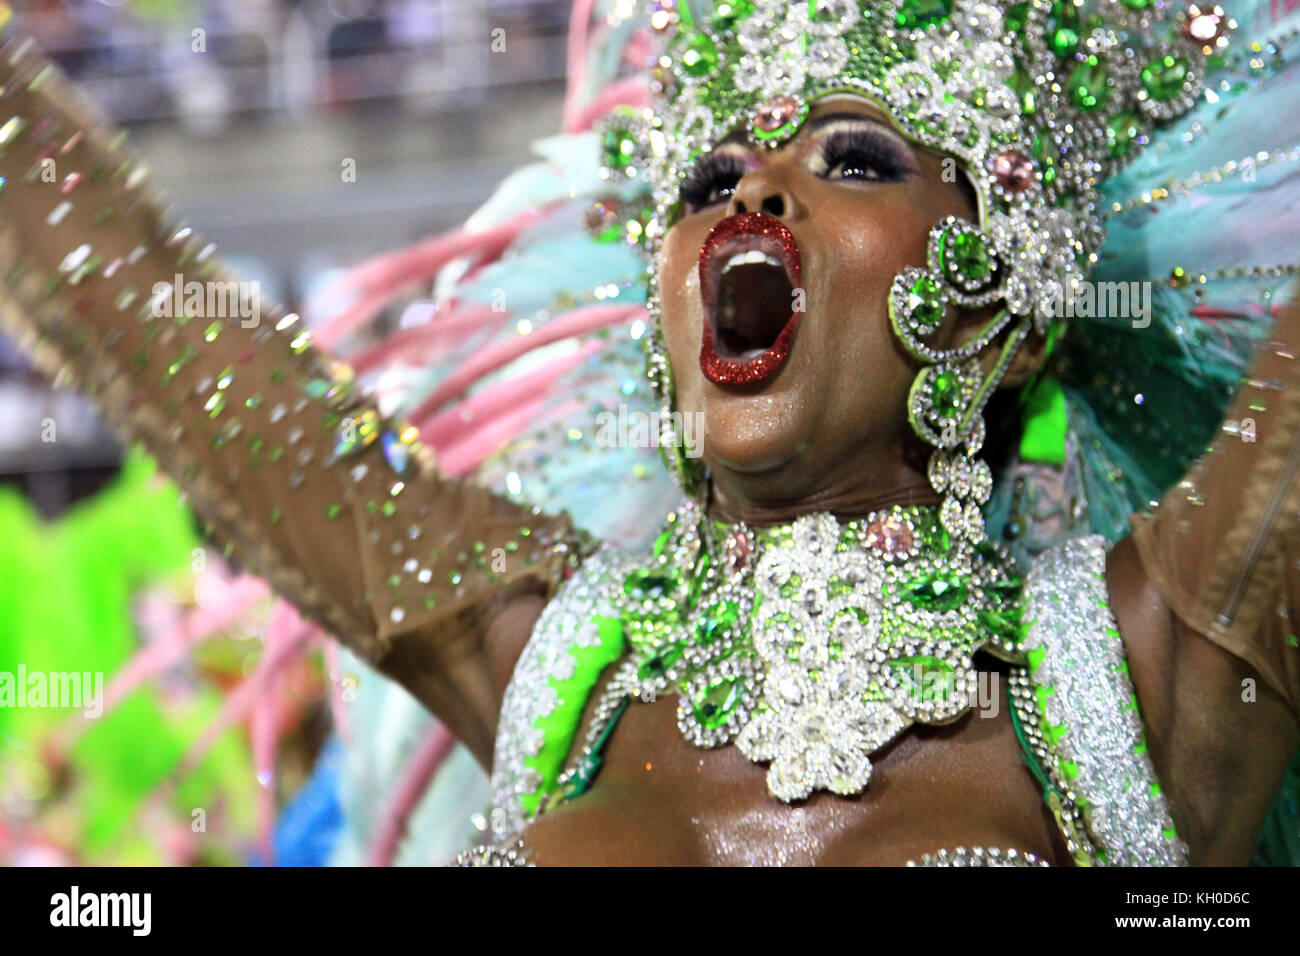 Es braucht viel Energie und Training, um ein großer Samba-Tänzer zu werden und am Sambodromo zu marschieren, wie diese Tänzerin der Mangueira Samba Schule. 03.03 2014. Stockfoto